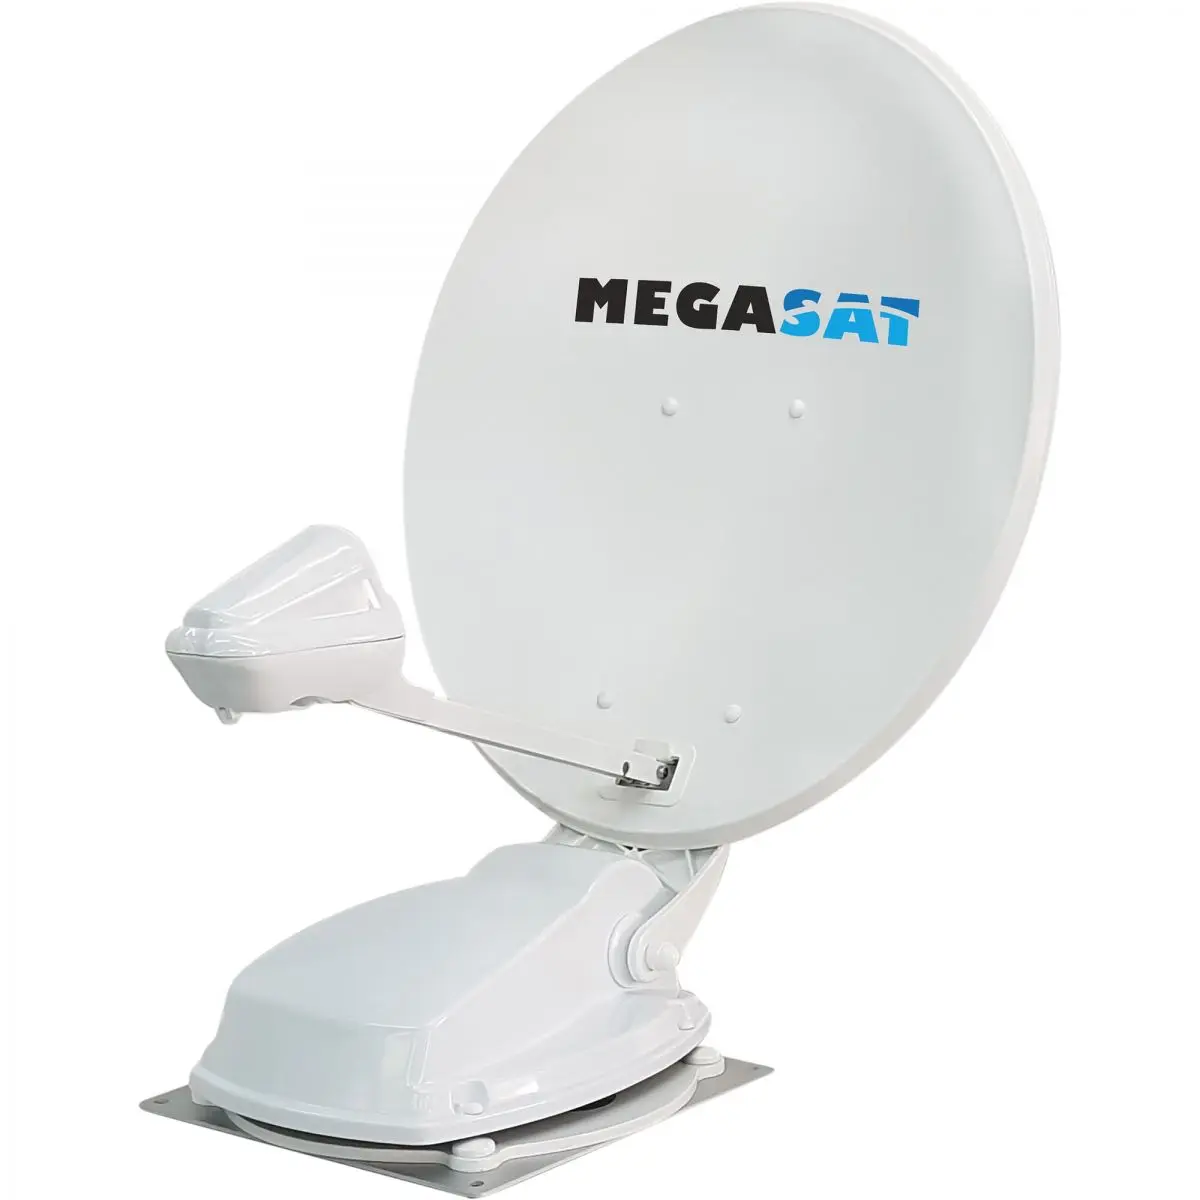 Satelitný systém Megasat Caravanman 65 Professional V2